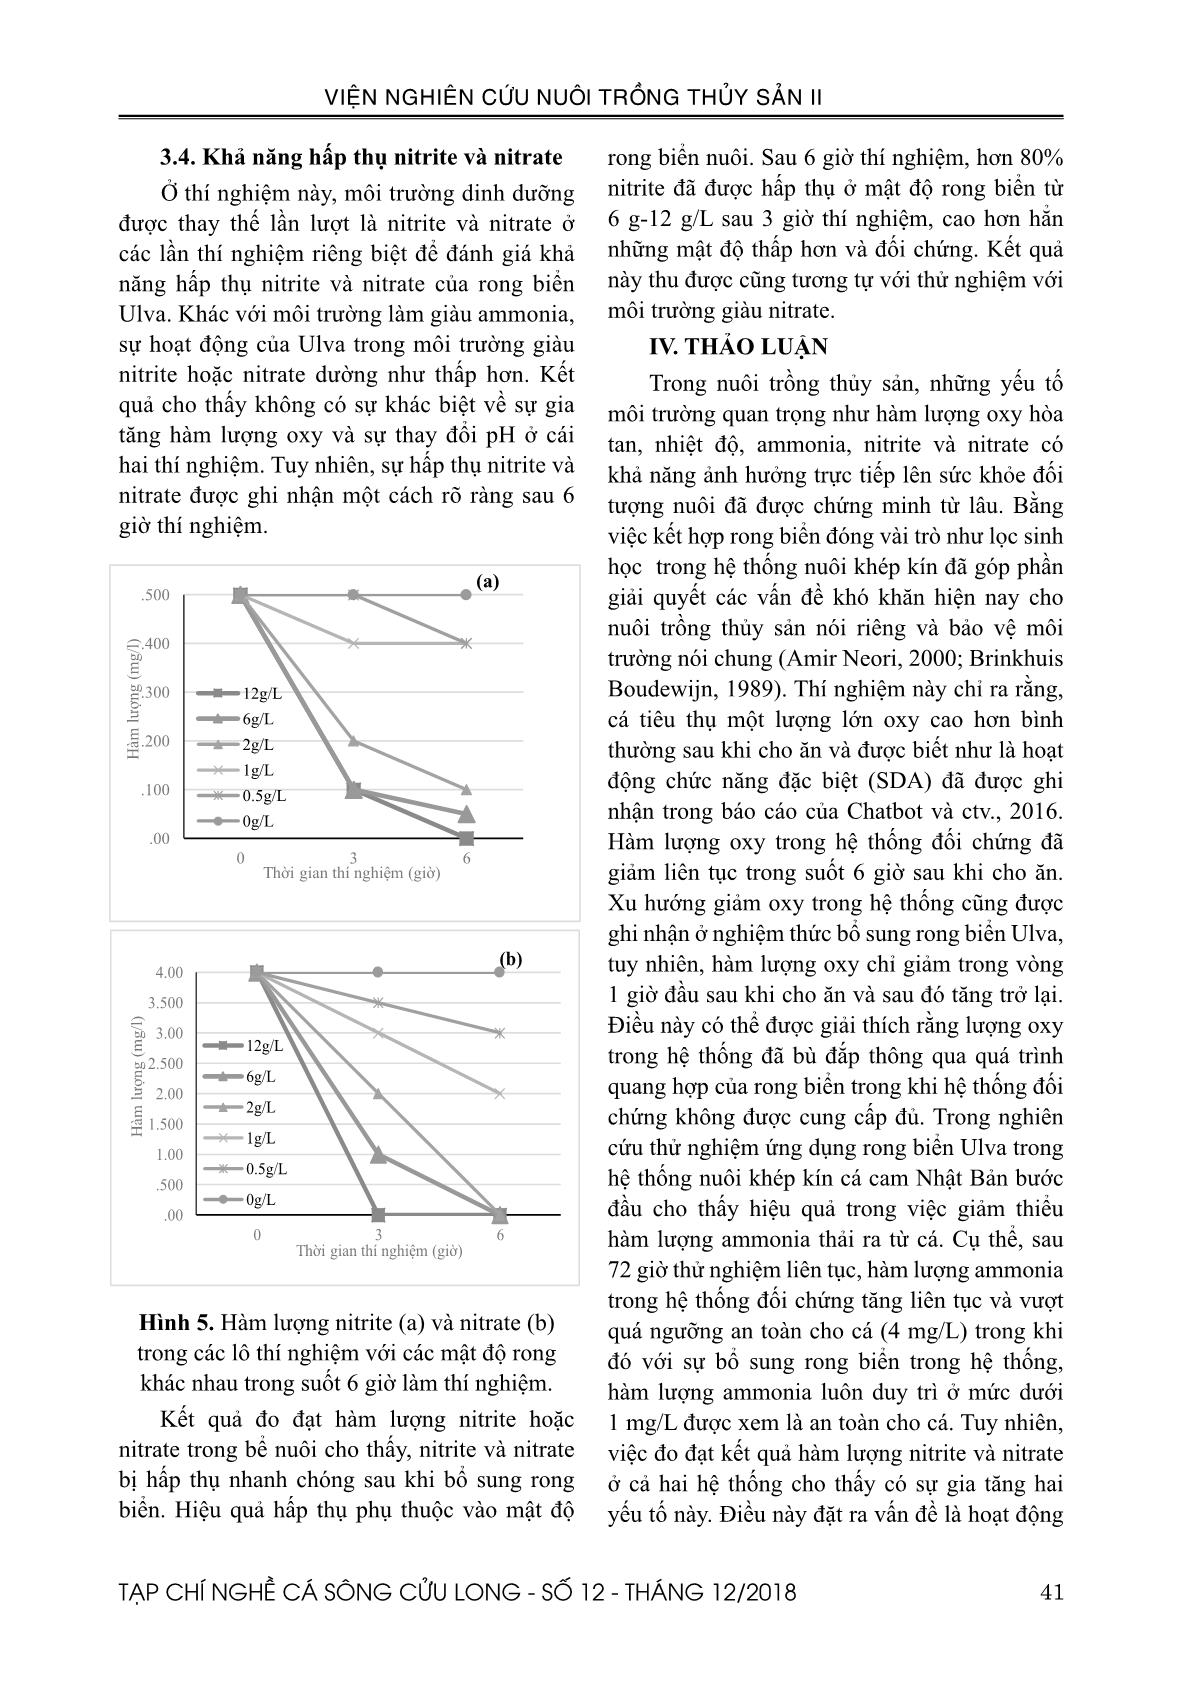 Nghiên cứu ứng dụng rong biển Ulva prolifera như là nhân tố lọc sinh học để giảm thiểu chất thải nitrogen trong hệ thống nuôi cá cam Nhật Bản (Seriolla quinqueradiata) trang 6